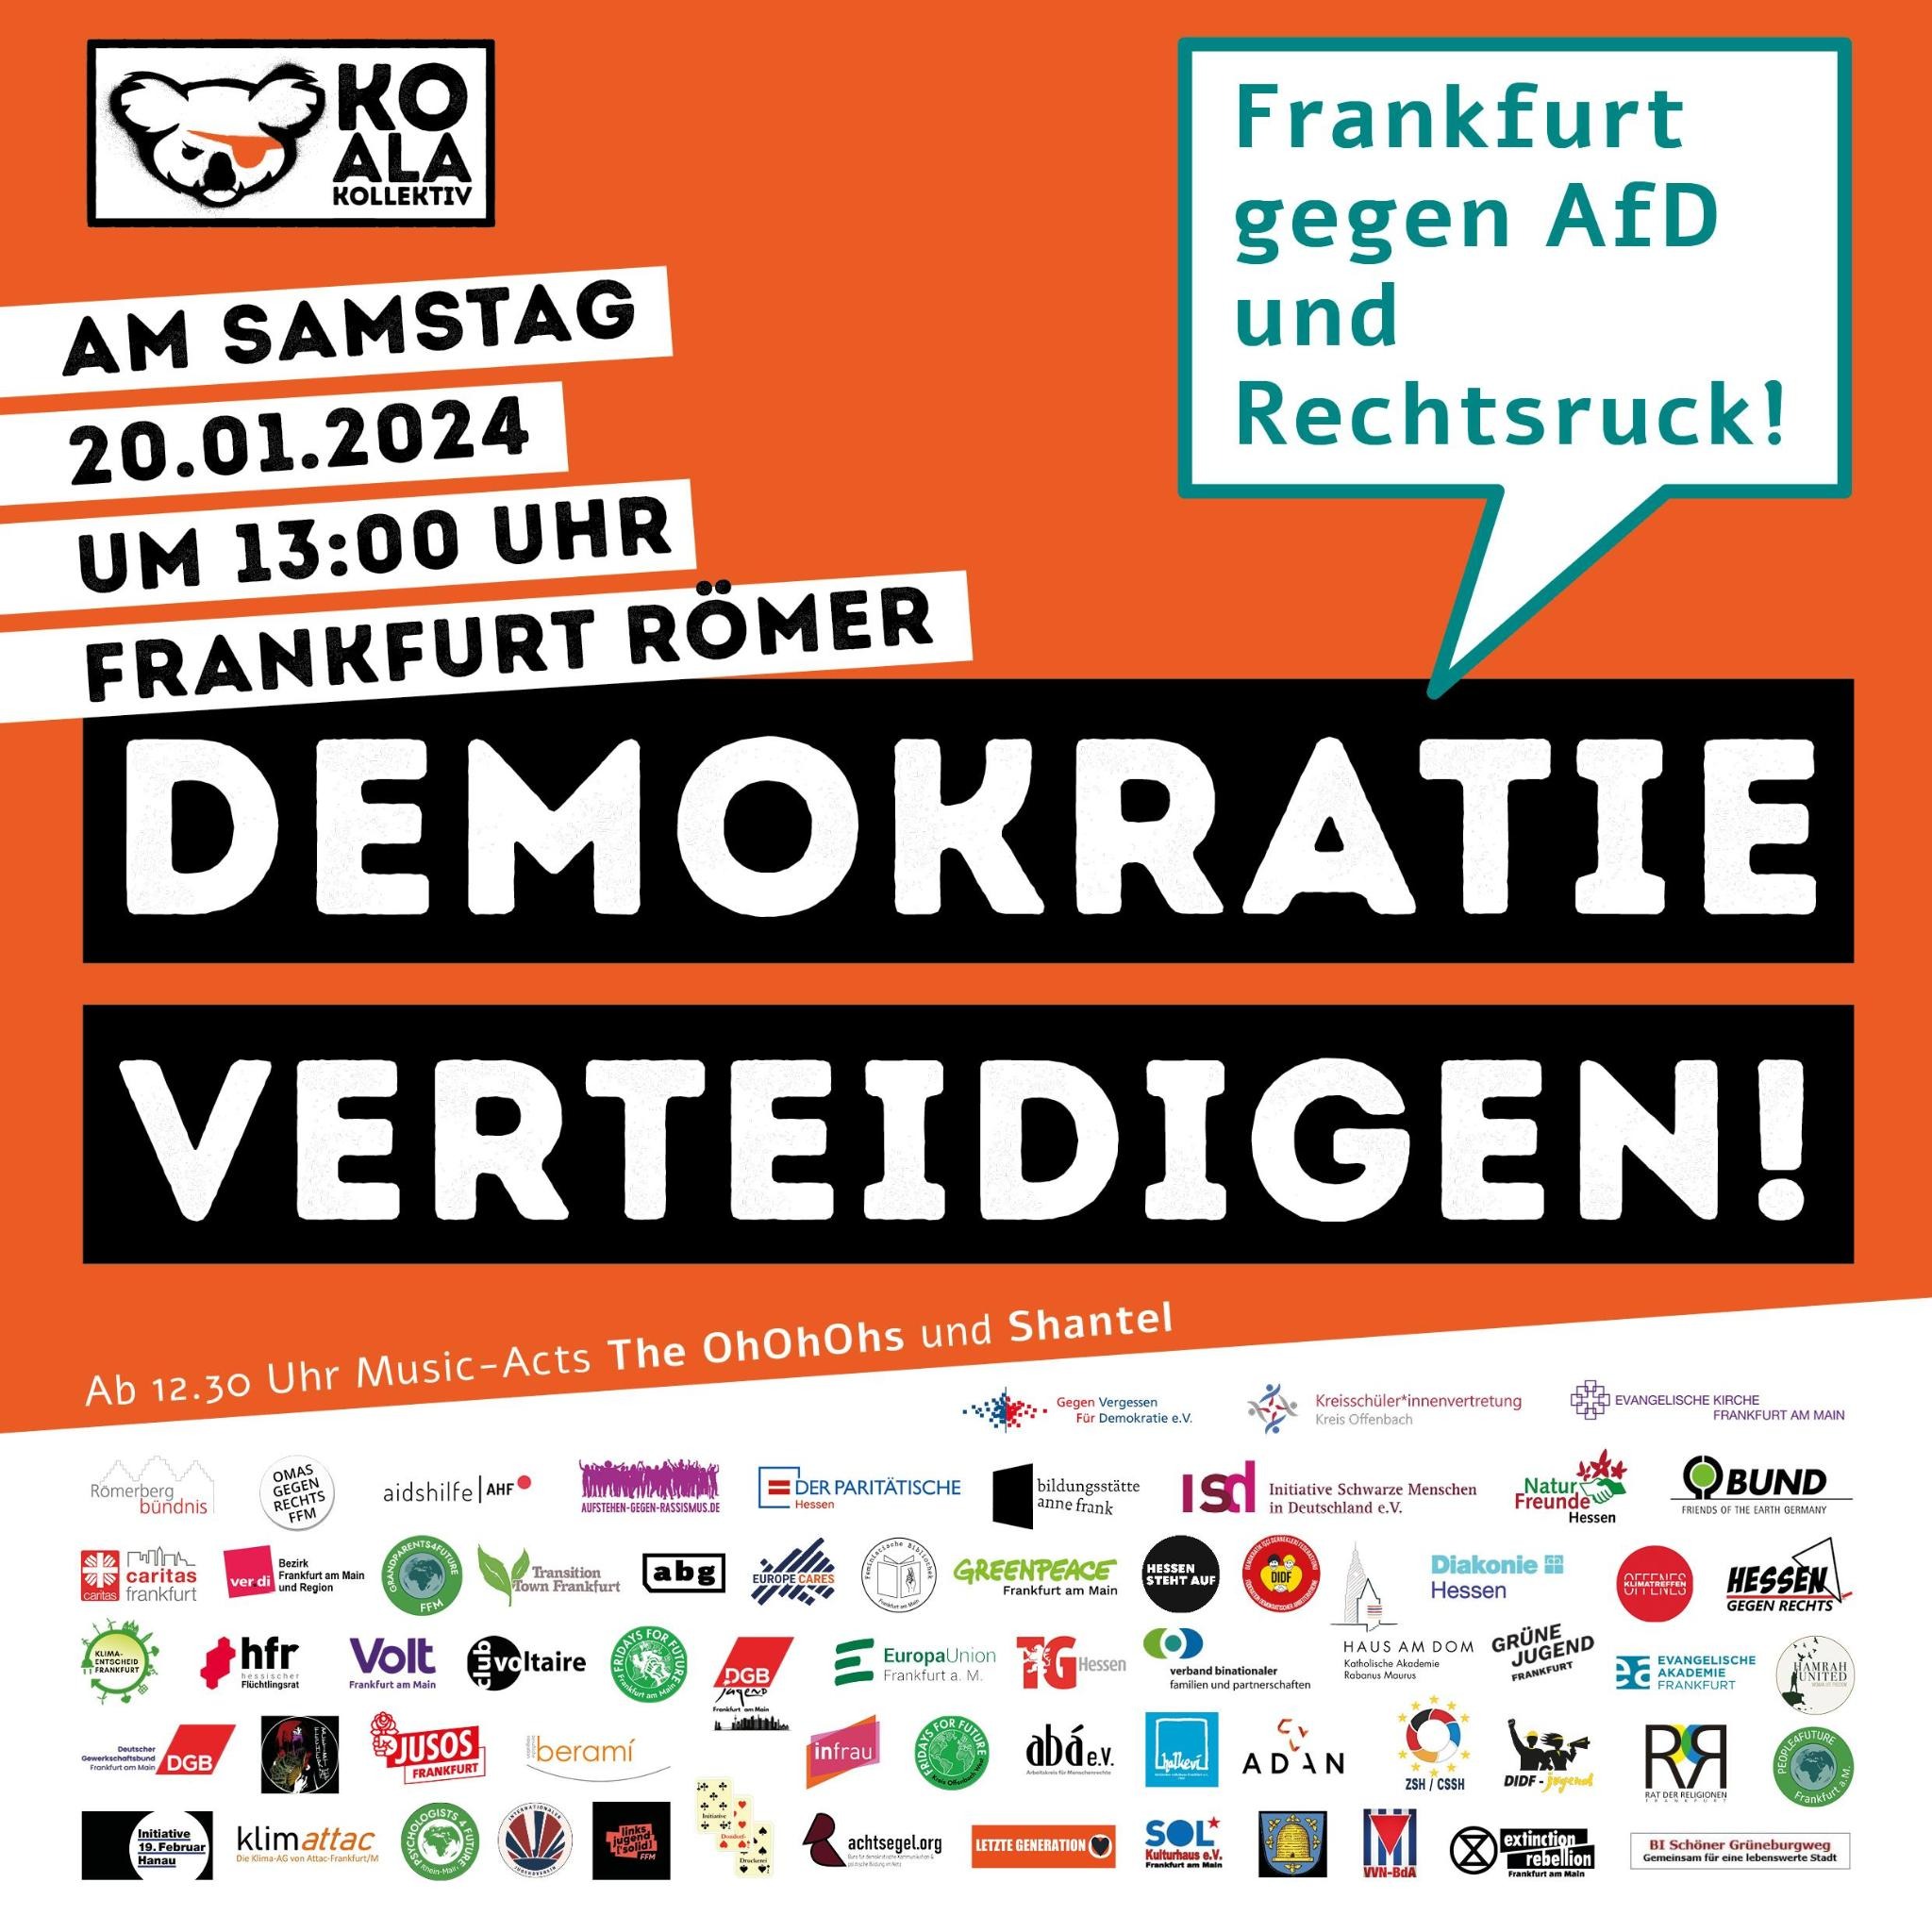 Demokratie verteidigen – Frankfurt gegen AfD und Rechtsruck!